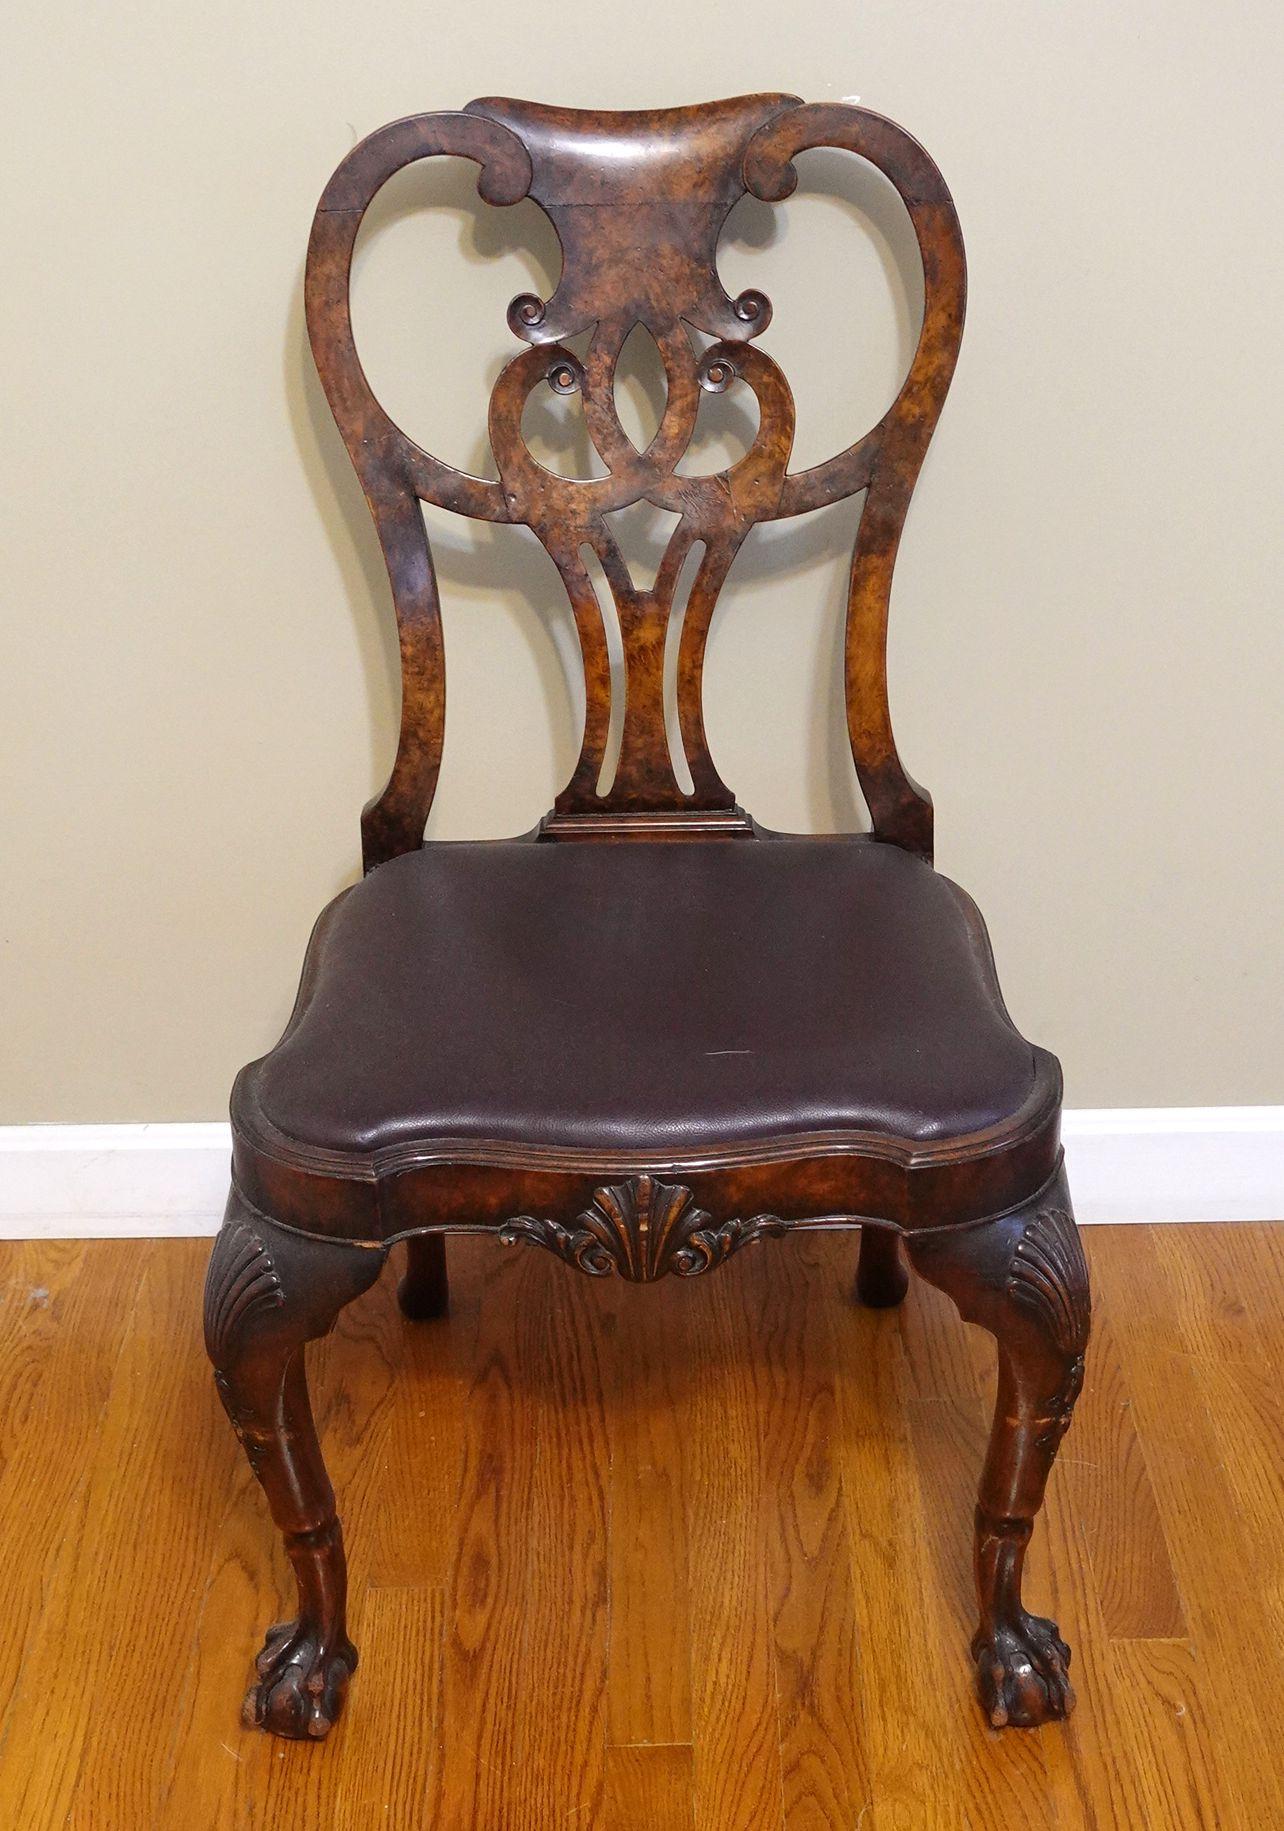 Nussbaum und Wurzelholz Chippendale Side Chair, mit geformten Sitz auf Muschel geschnitzt Cabriole Beine enden in Kugel und Kralle Füße, 18. Jahrhundert, Höhe 37 1/2 Zoll, Sitzhöhe 18 Zoll.
